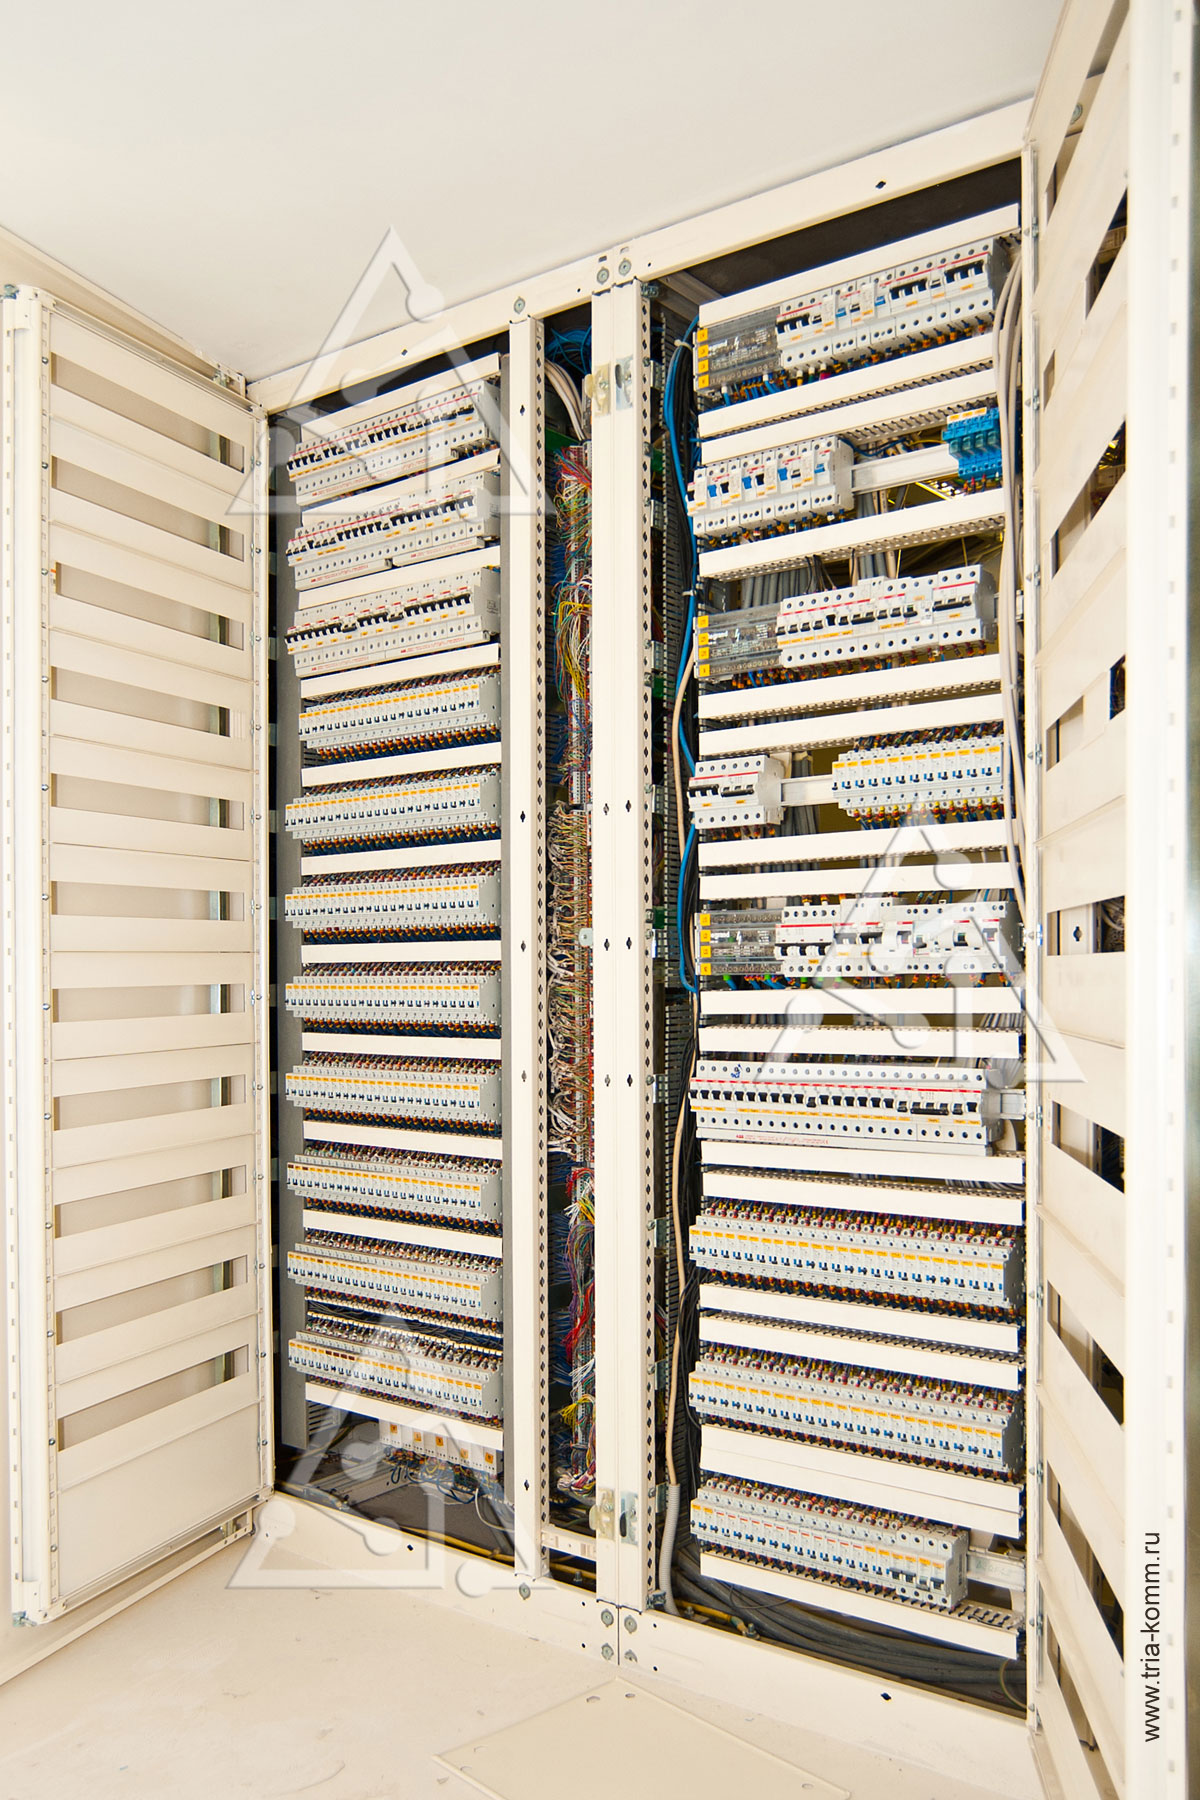 Фото 2-й секции электрических шкафов с коммутационным оборудованием системы электроснабжения и освещения